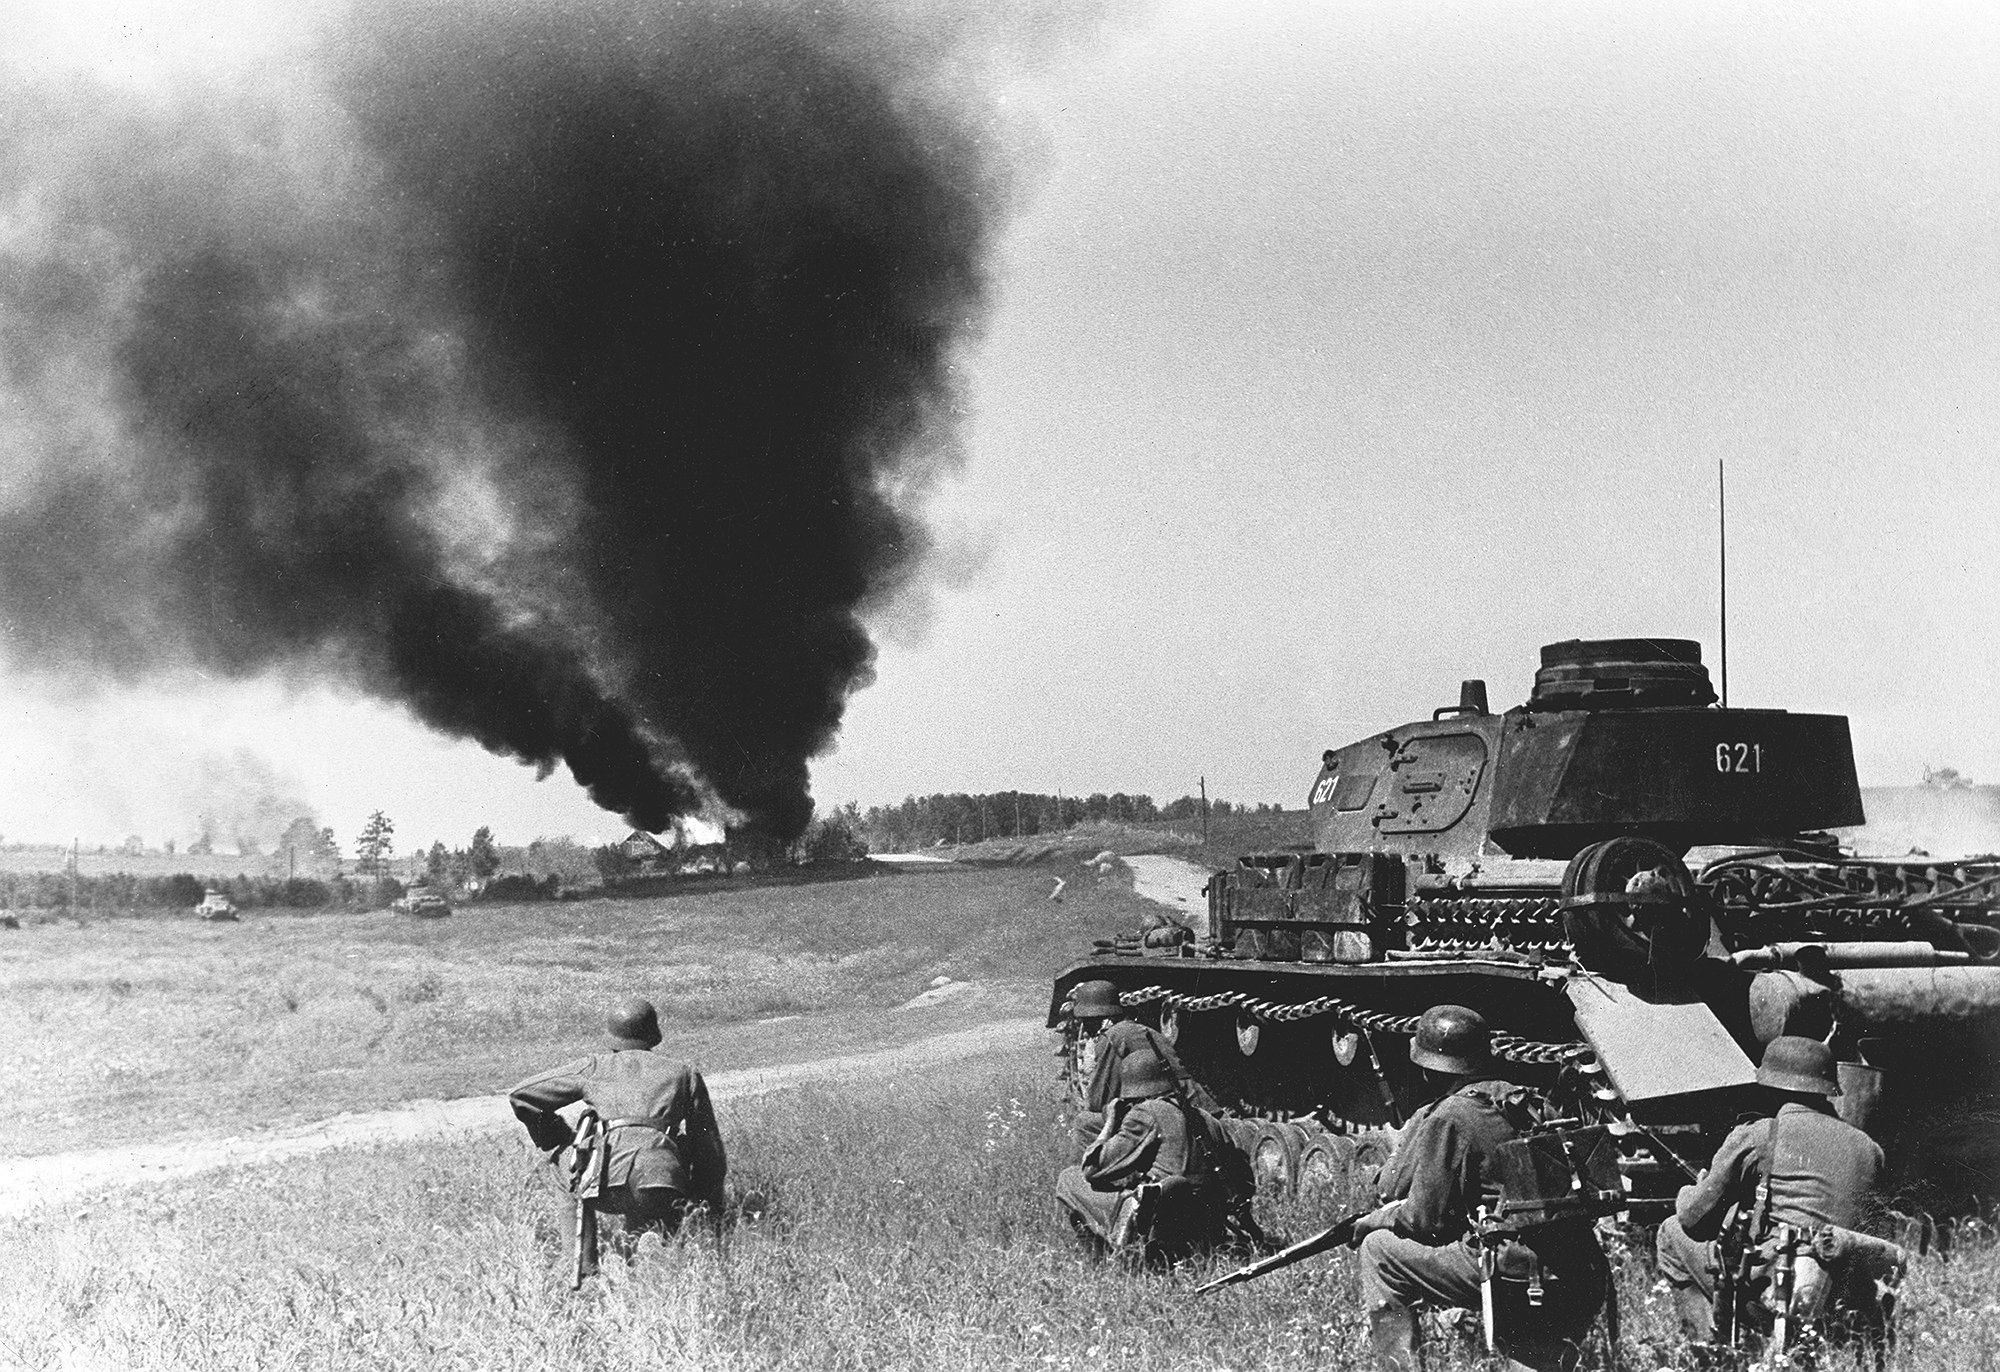 Нападение вов. Операция Барбаросса лето 1941. Немецкие танки 1941 года Барбаросса. Наступление Германии 22 июня 1941. Наступление вермахта 1941.